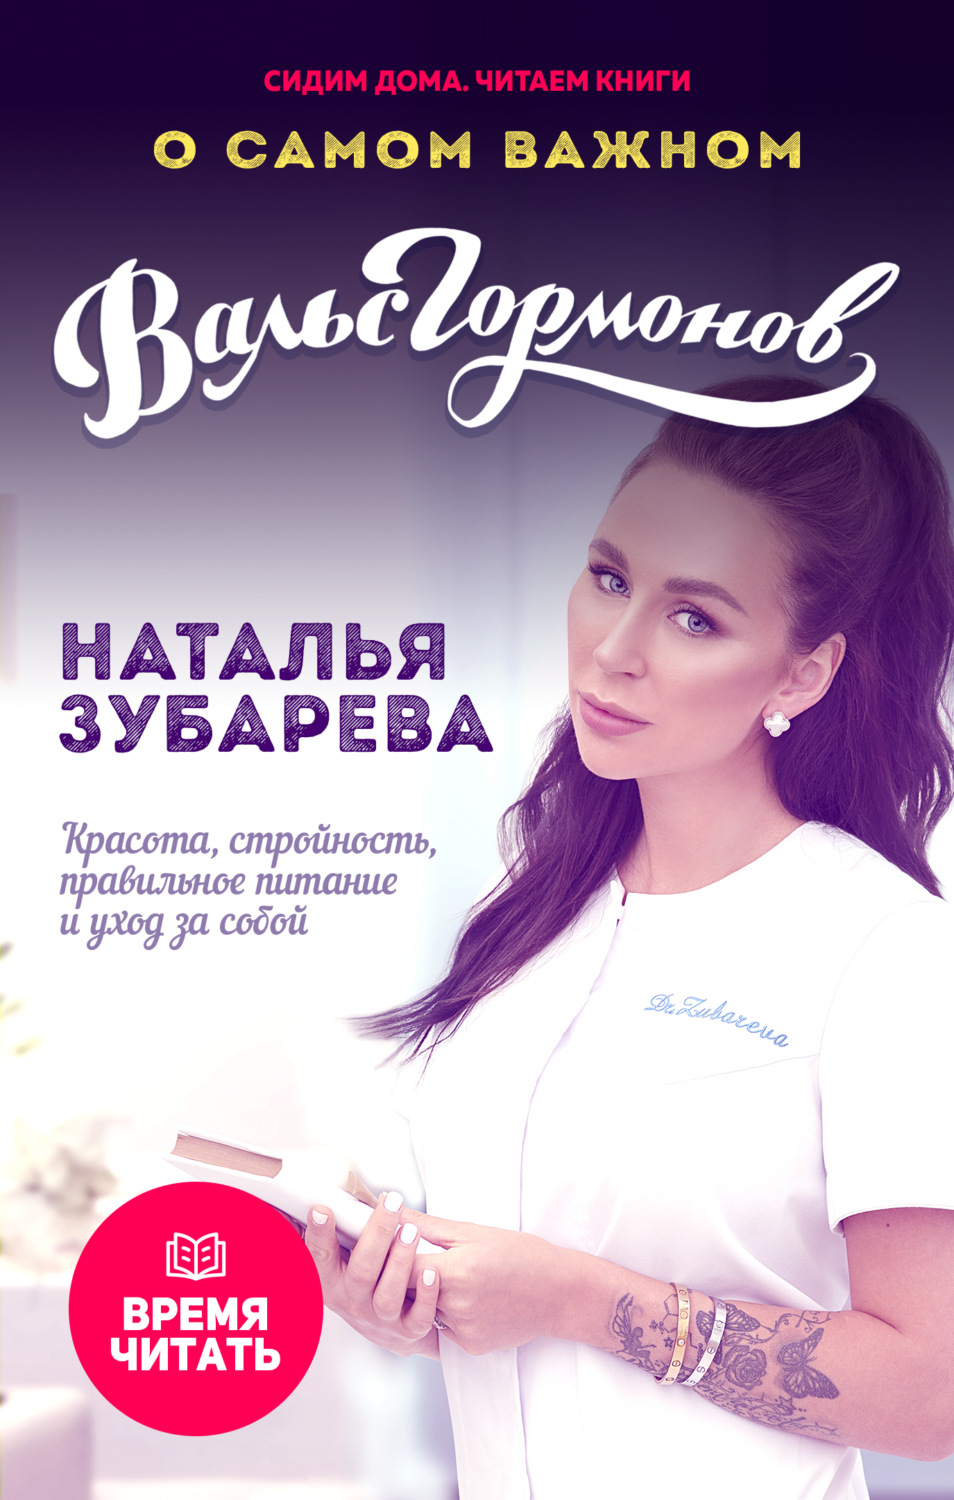 Вальс гормонов Наталья Зубарева